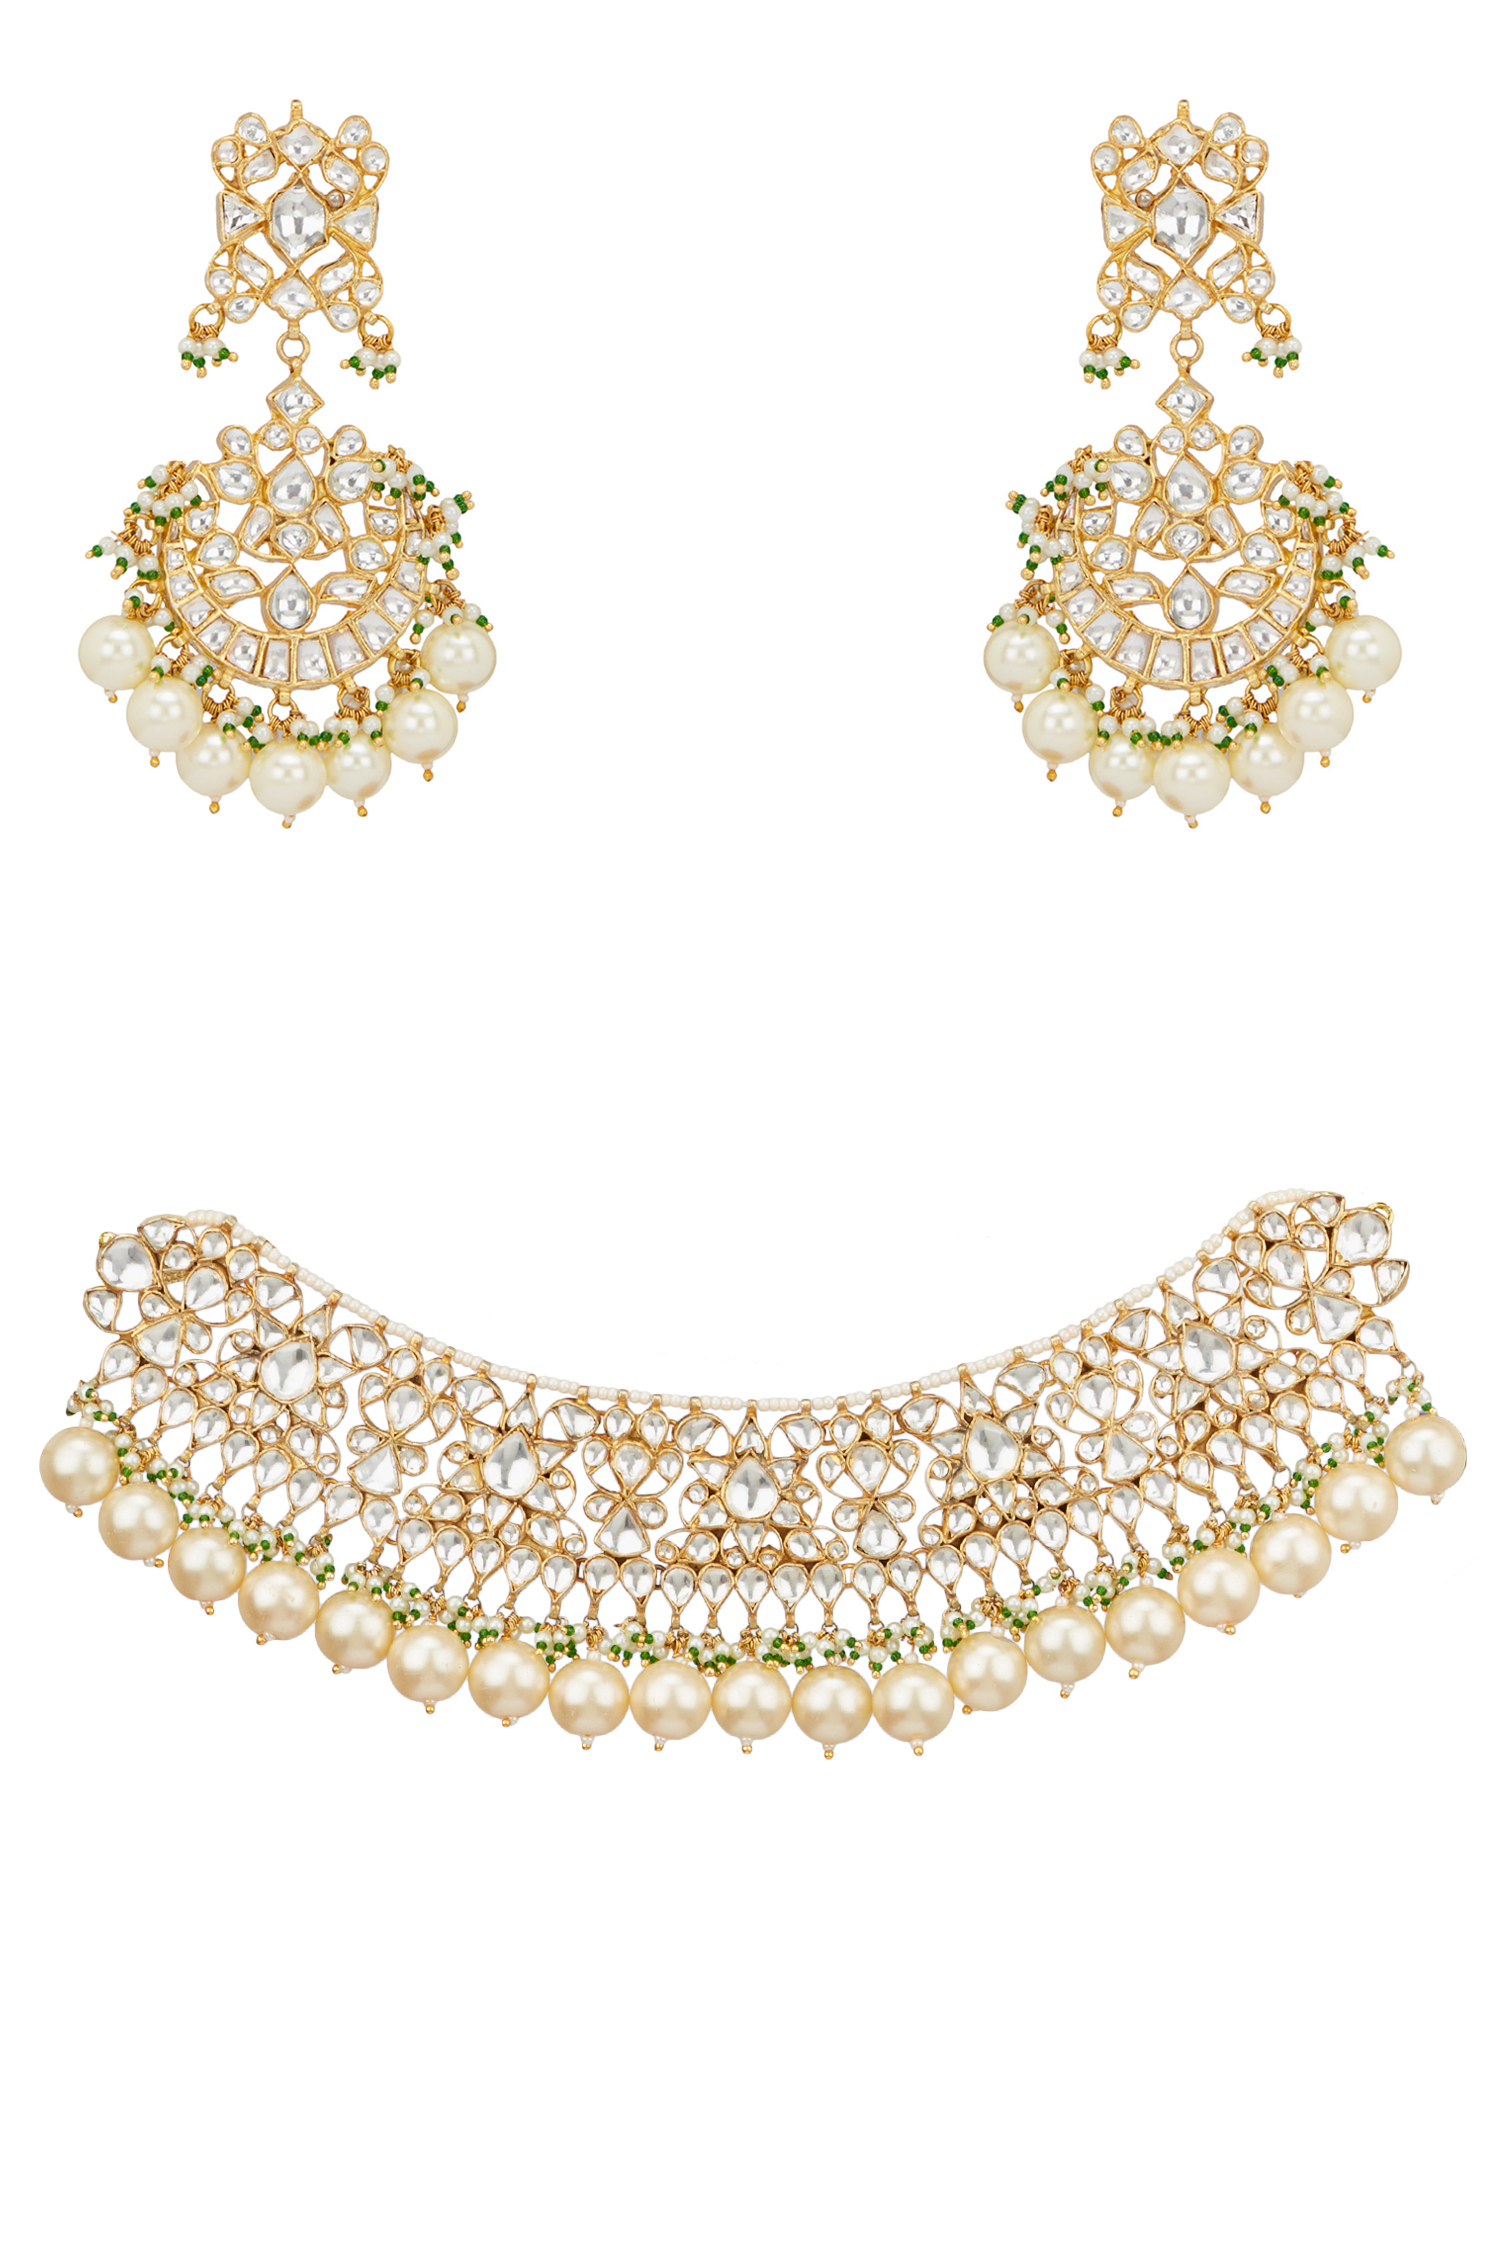 White jadtar necklace set designed by 